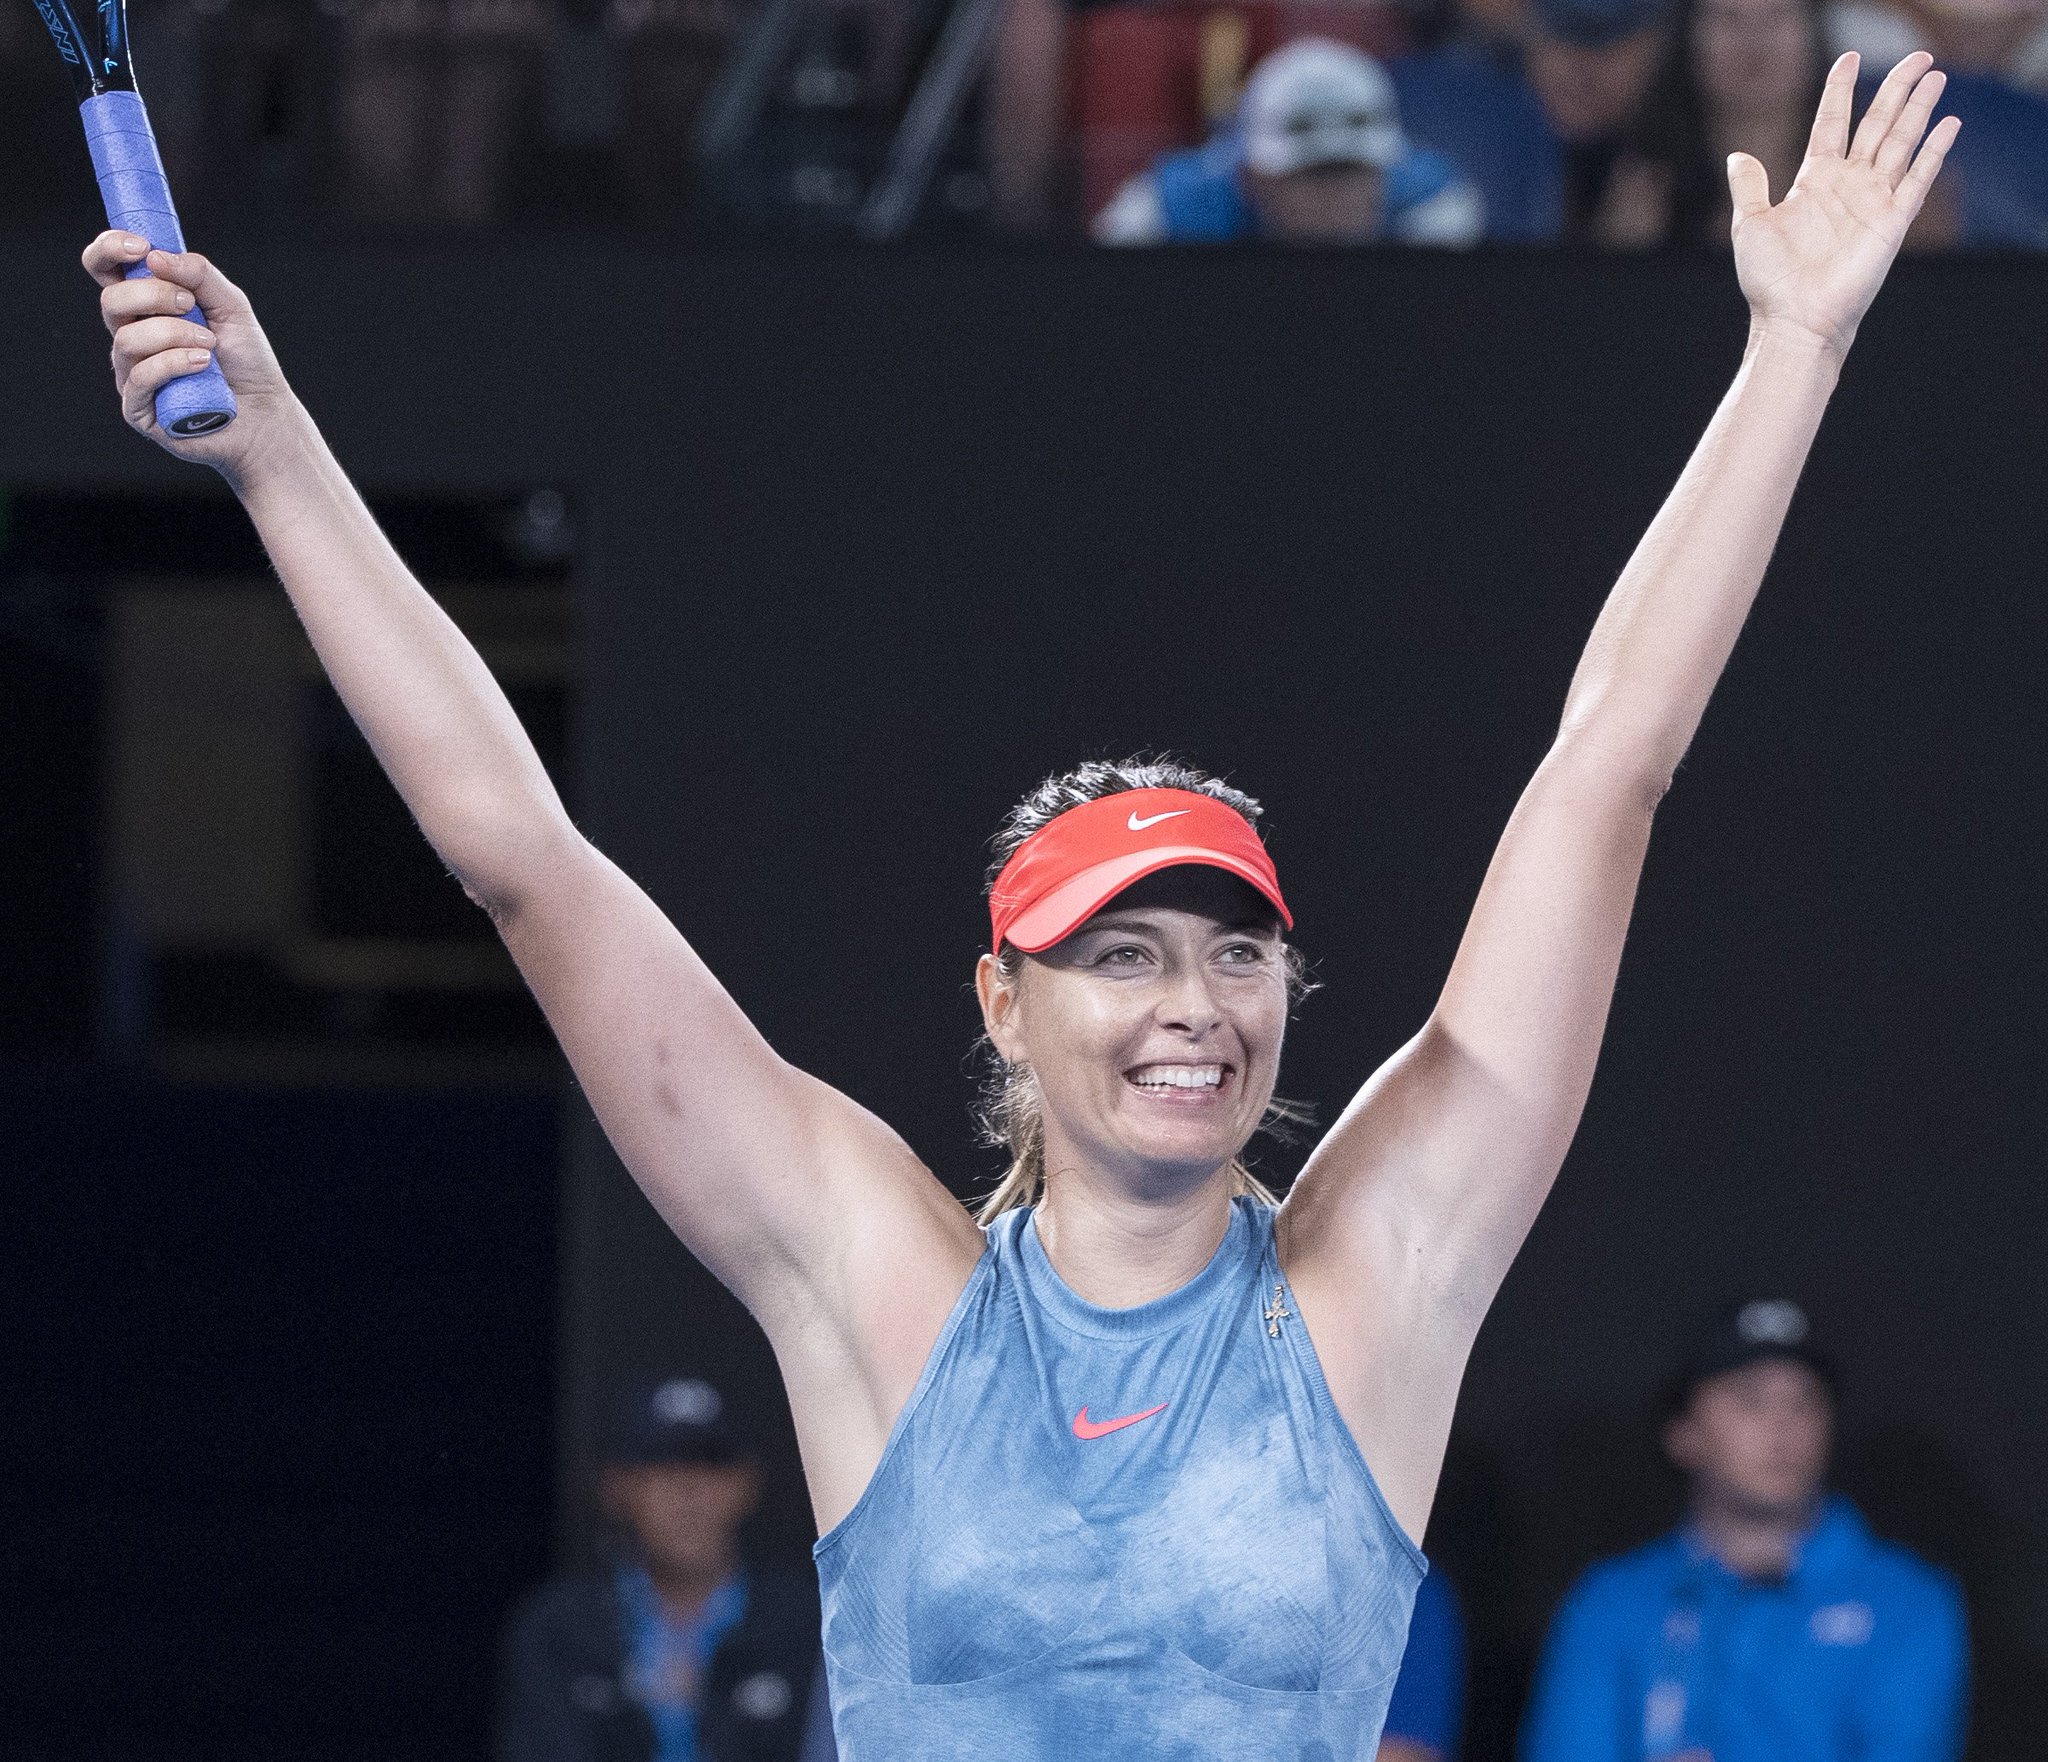  We wish an Happy Birthday to Maria Sharapova, turning 32 today! 